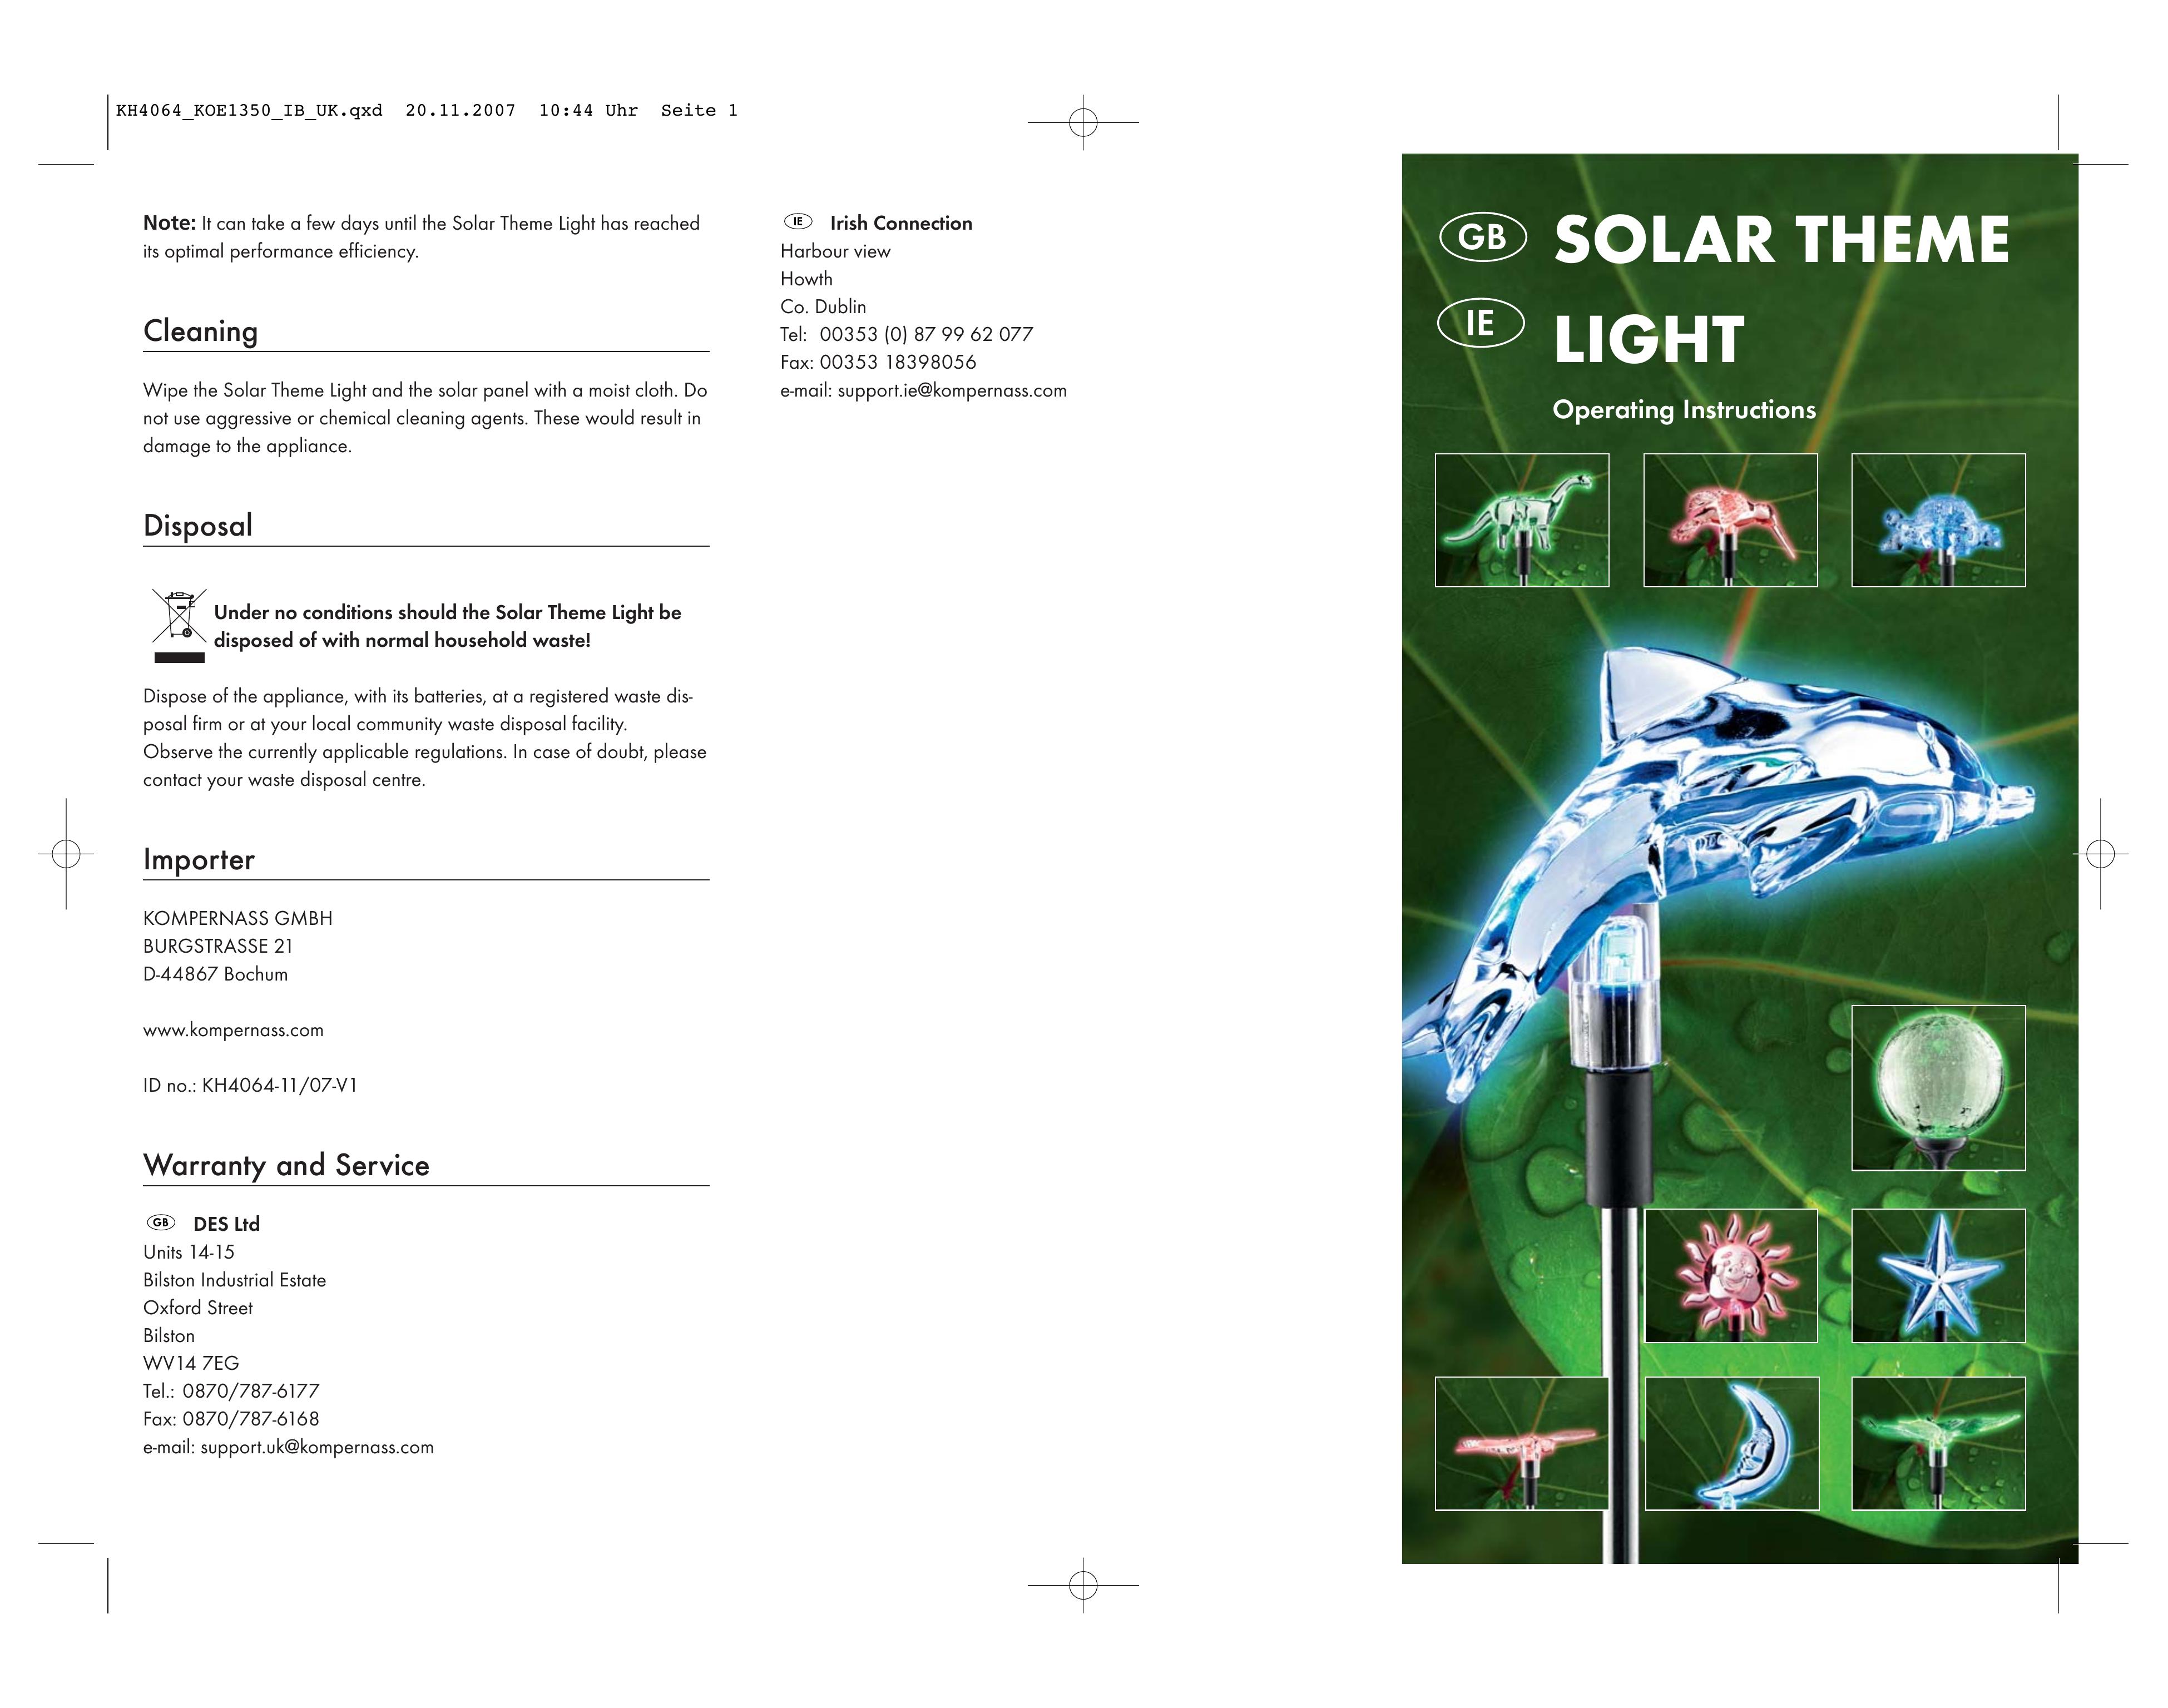 Kompernass KH4064-11 Landscape Lighting User Manual